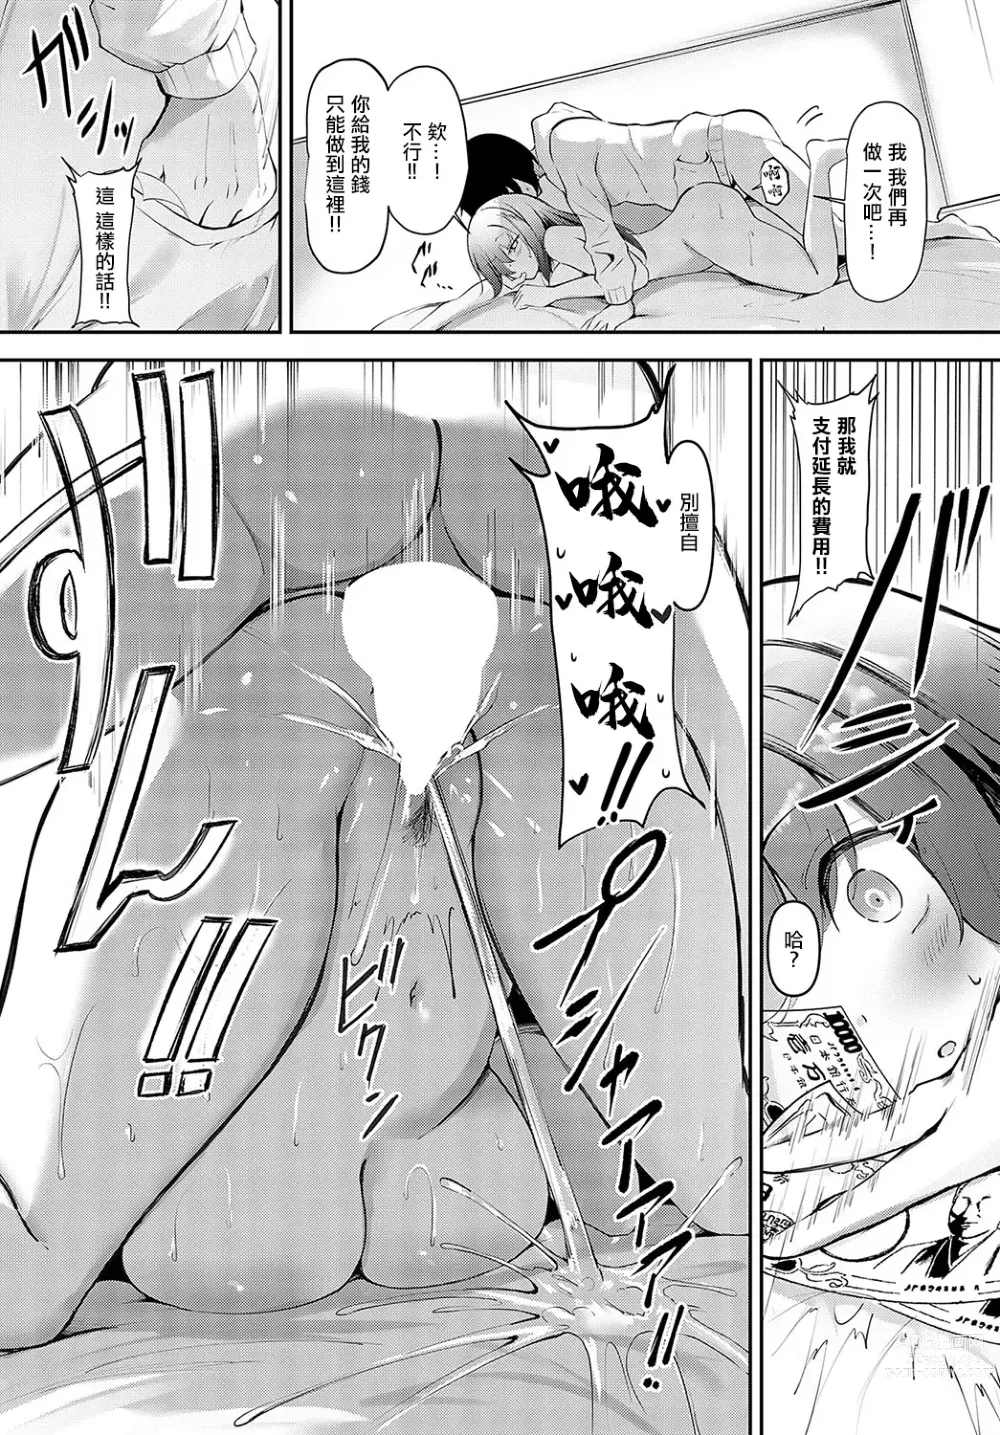 Page 15 of manga Gyakuten Occupied